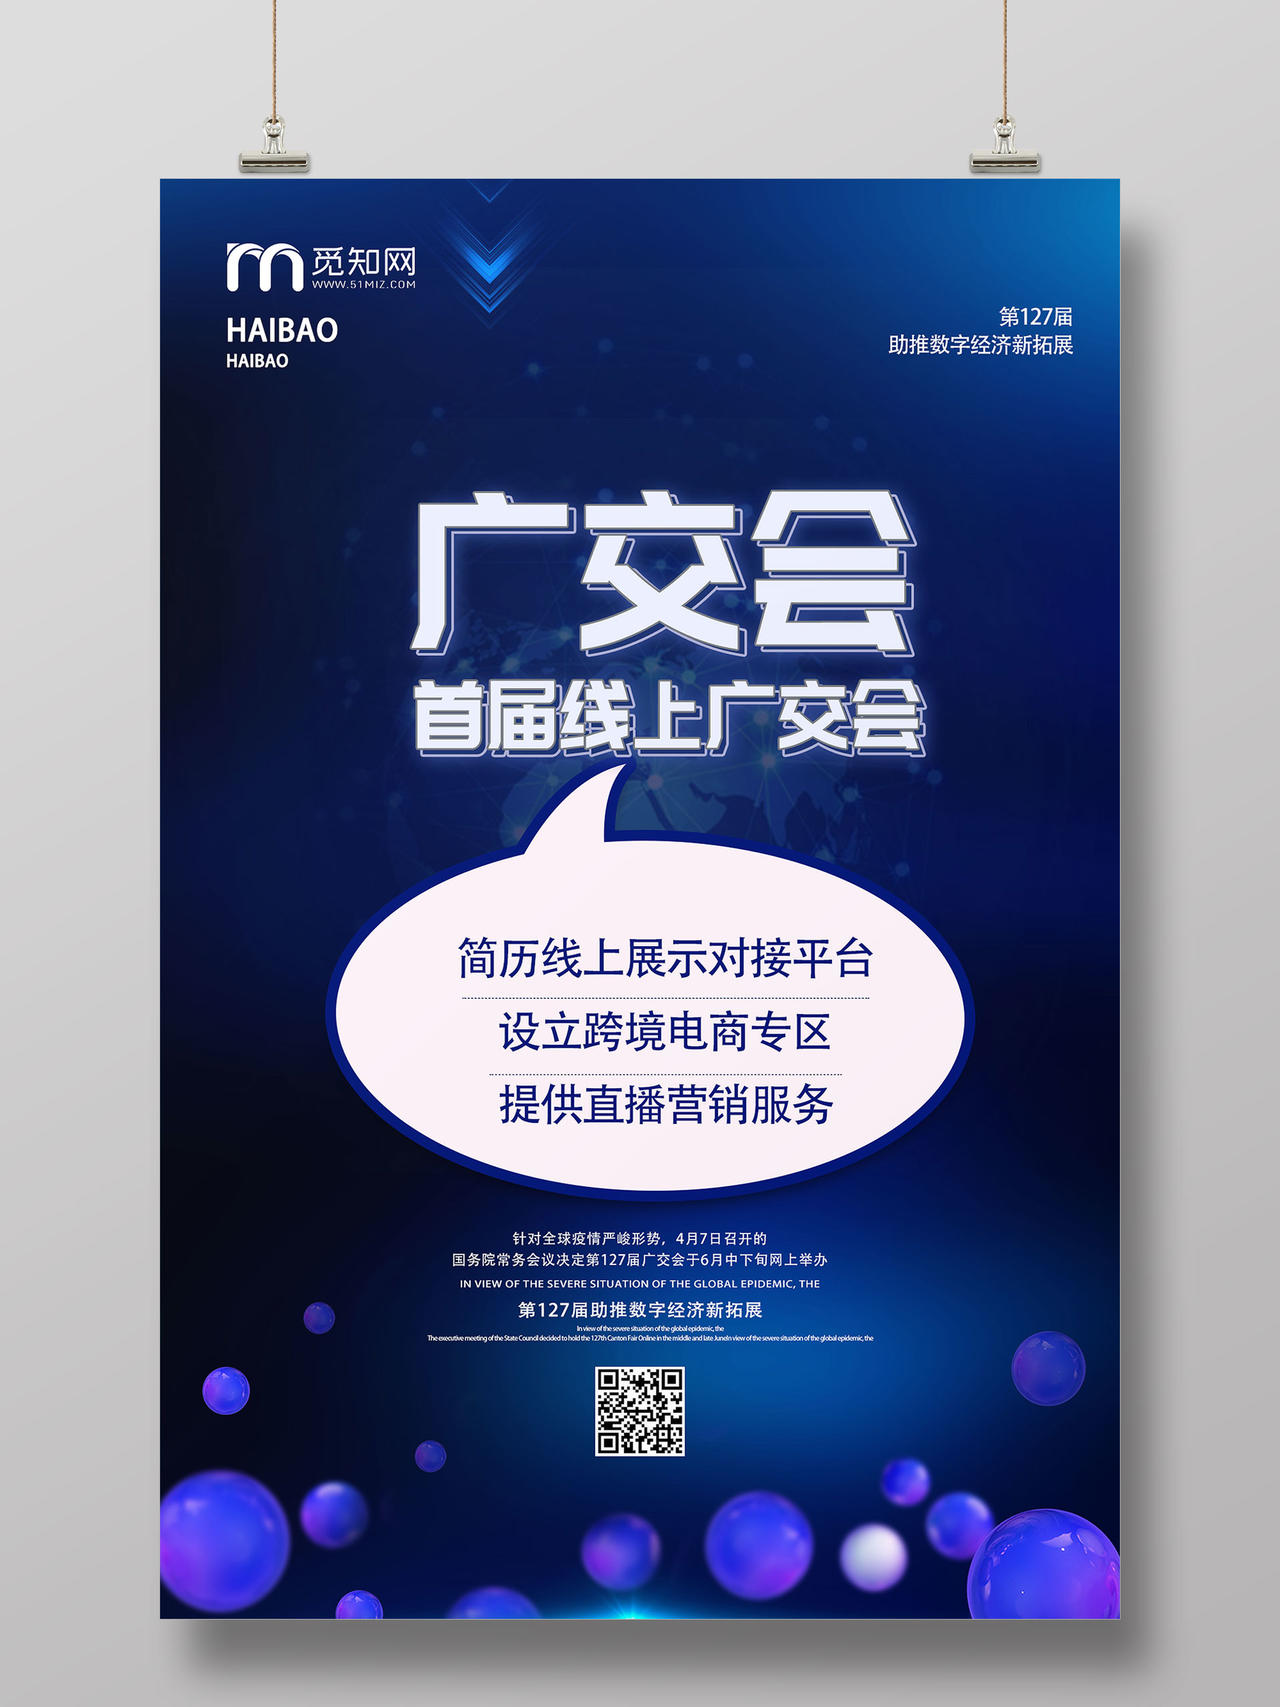 蓝色科技感广交会首届线上广交会宣传海报